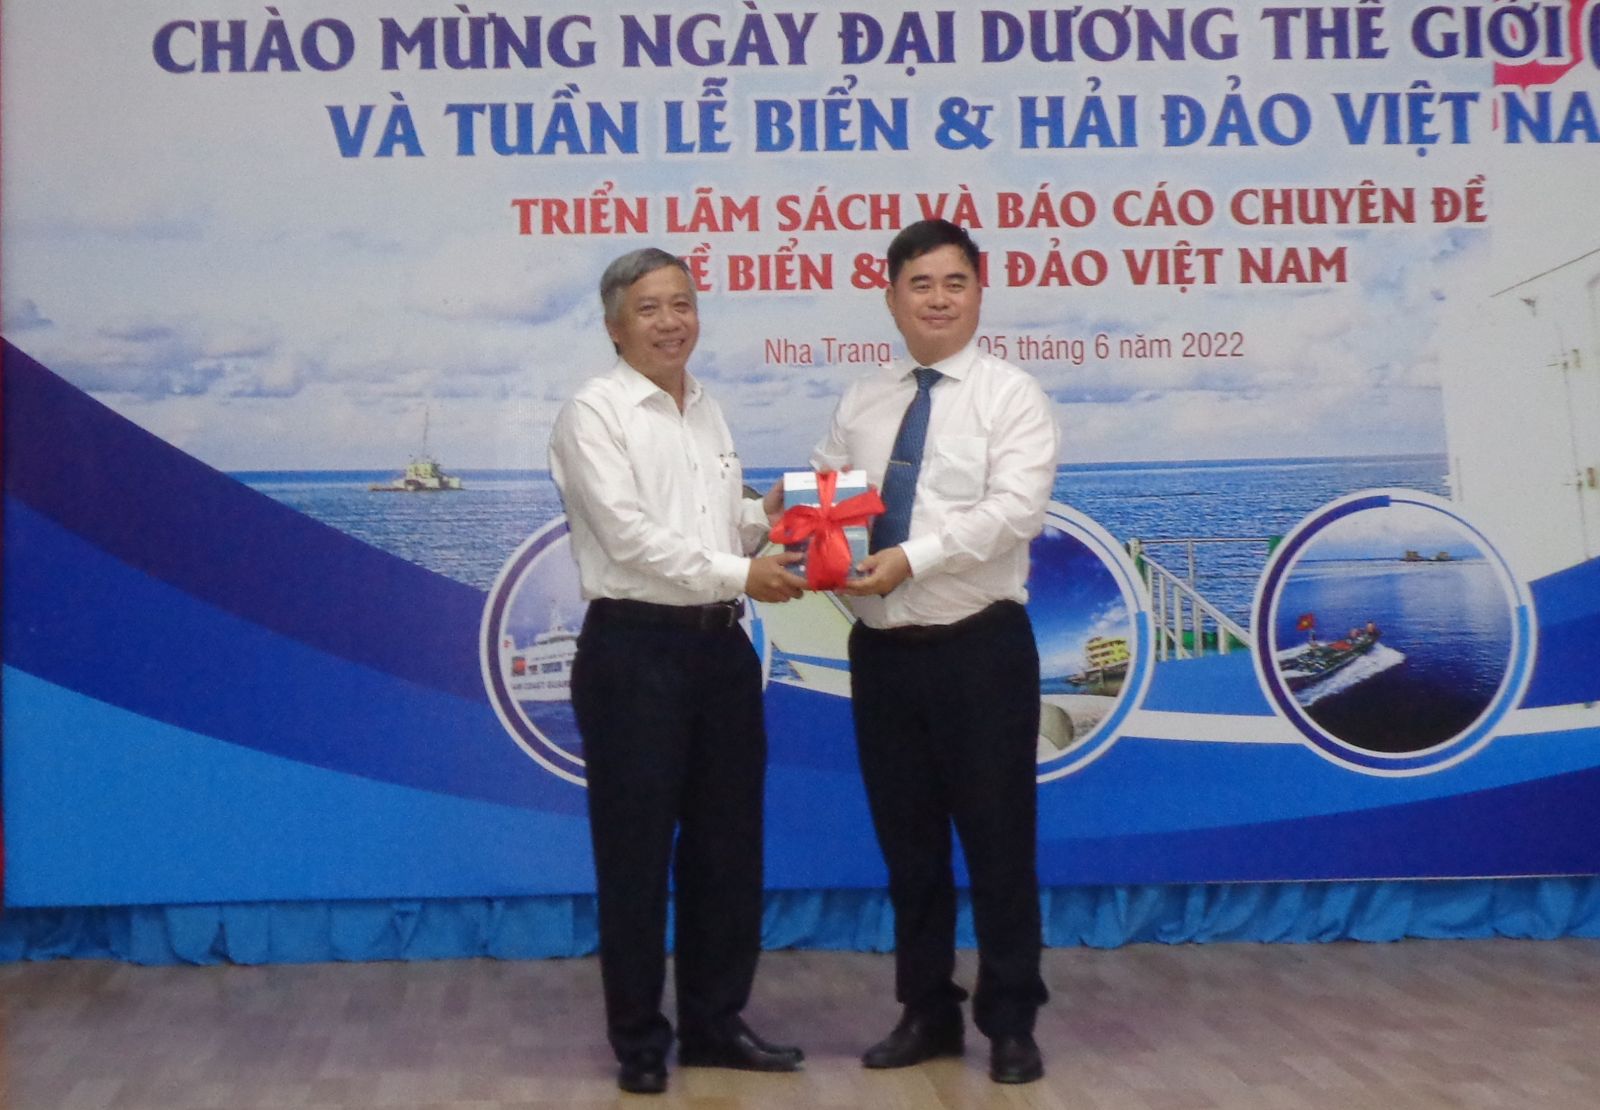 Triển lãm sách và Báo cáo chuyên đề về biển và hải đảo Việt Nam